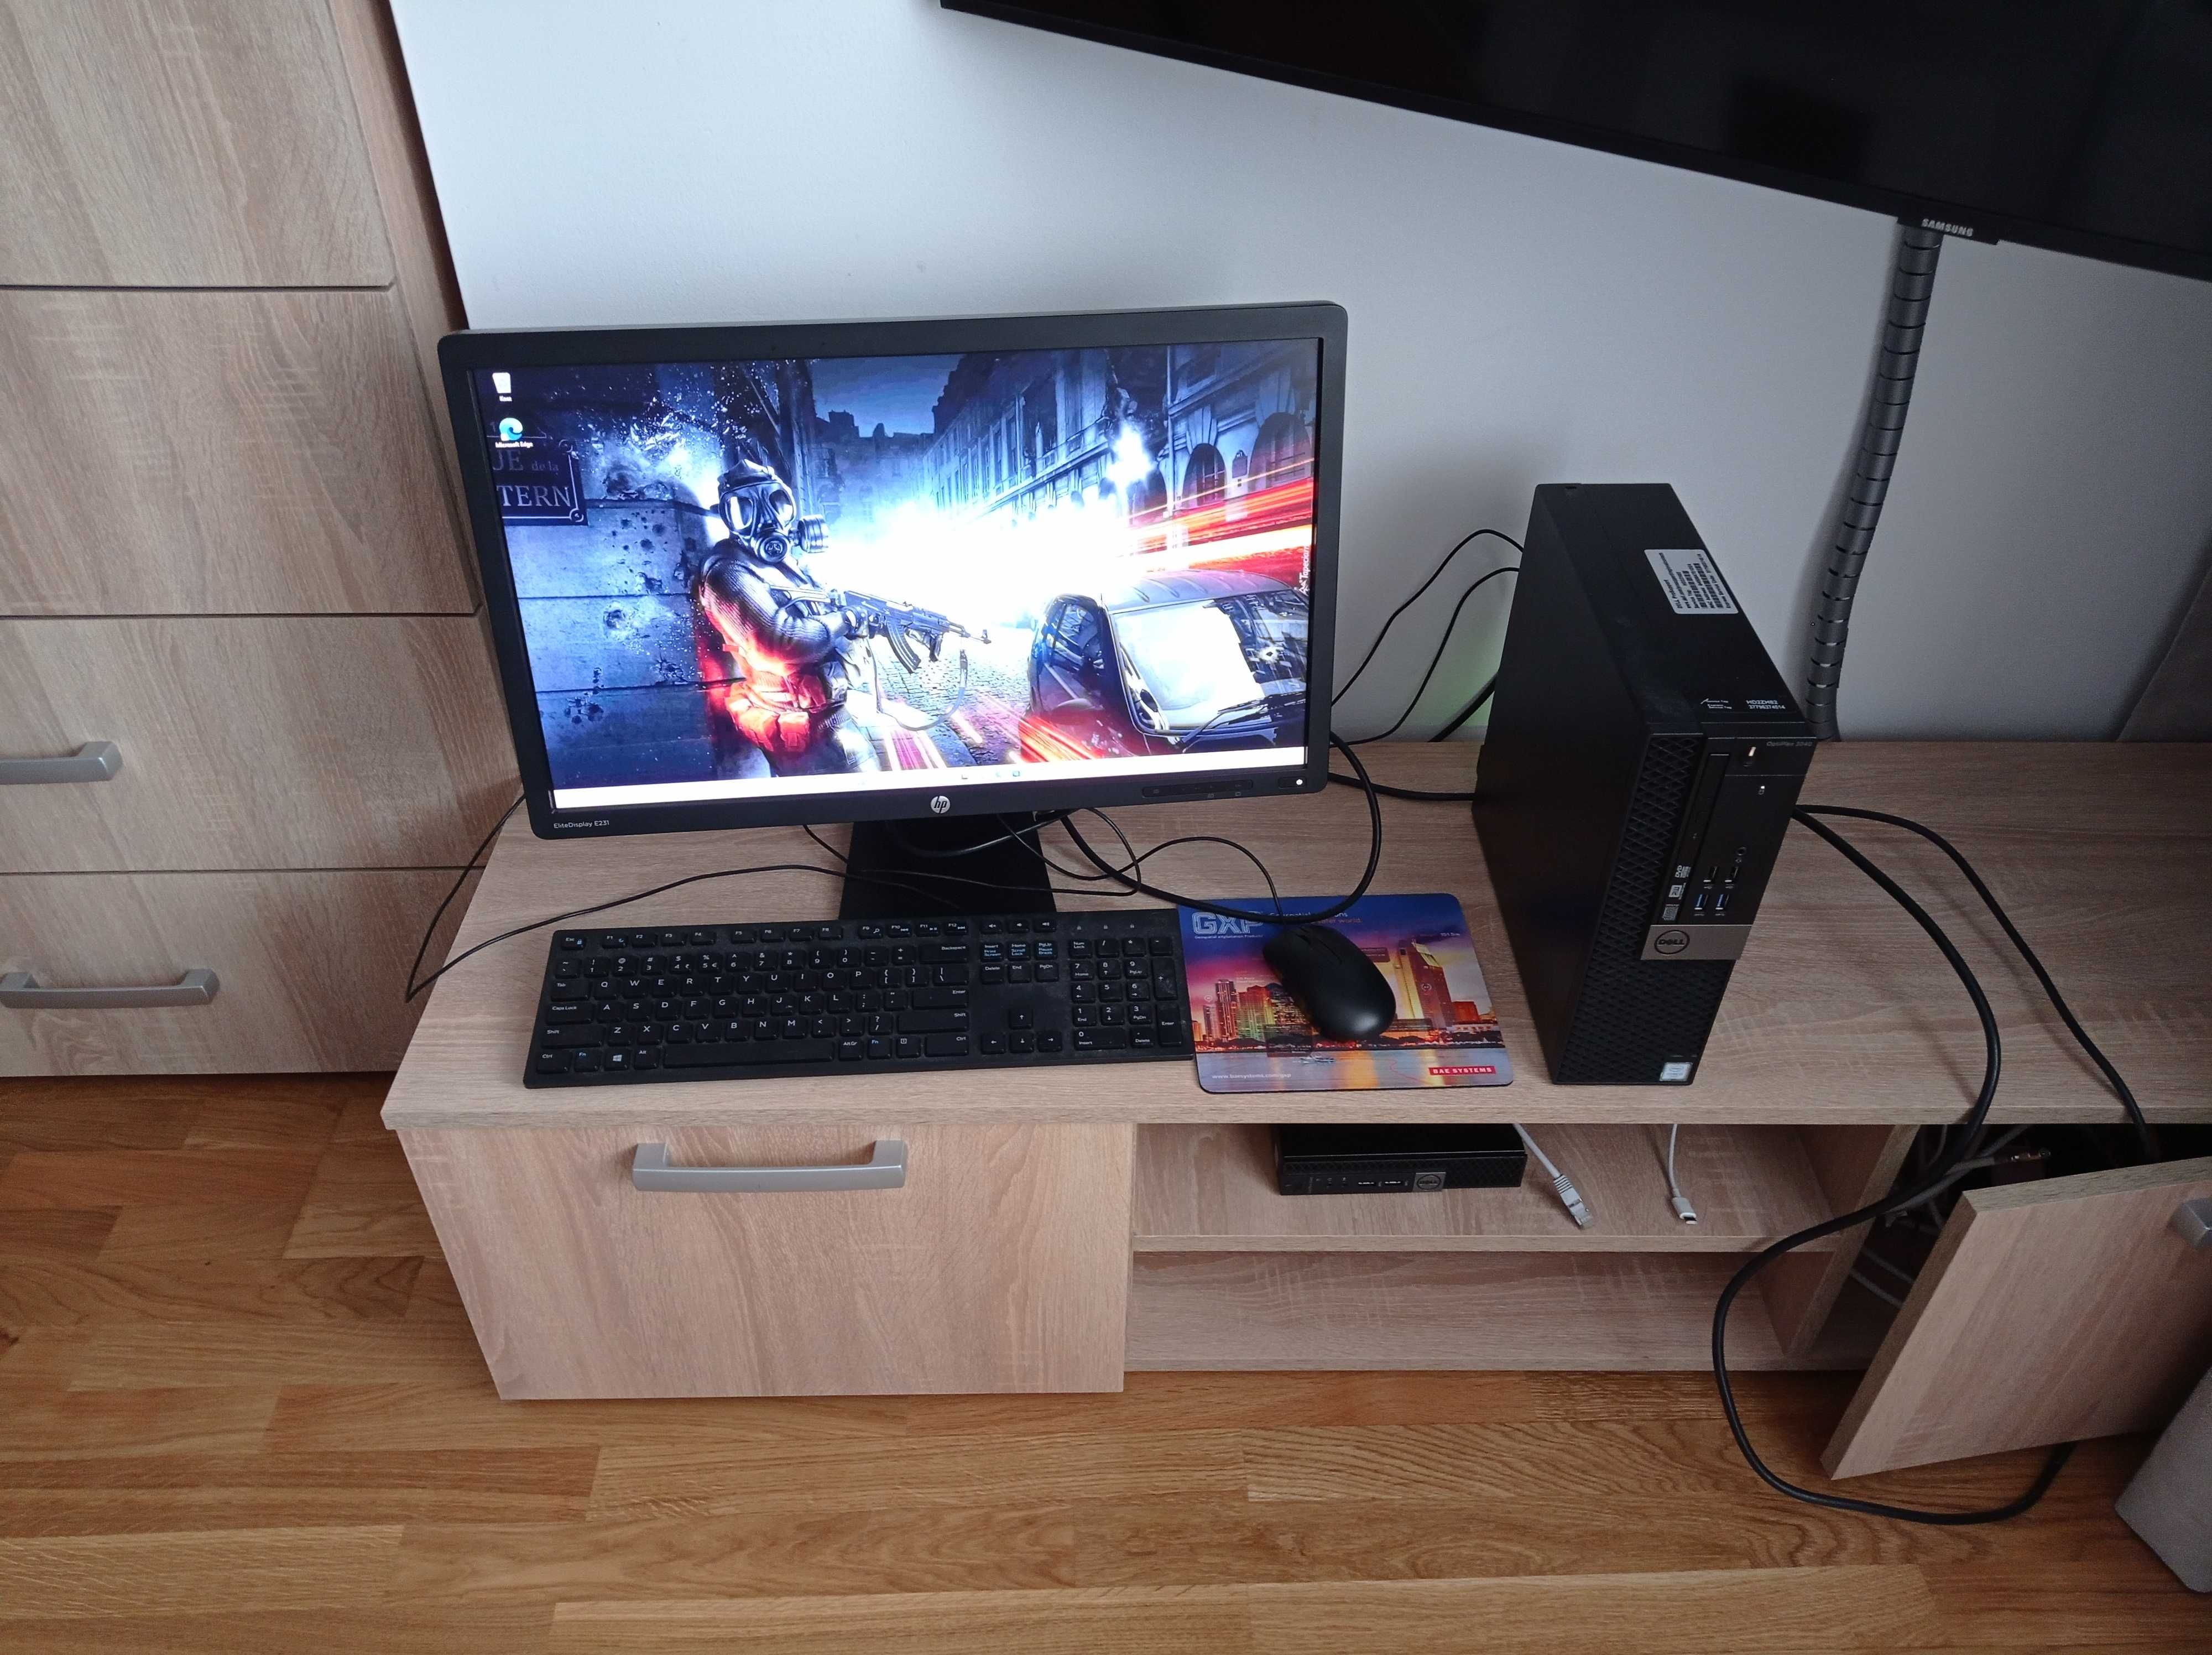 Komputer, klawiatura, mysz, monitor, karta wi fi i bluetooth